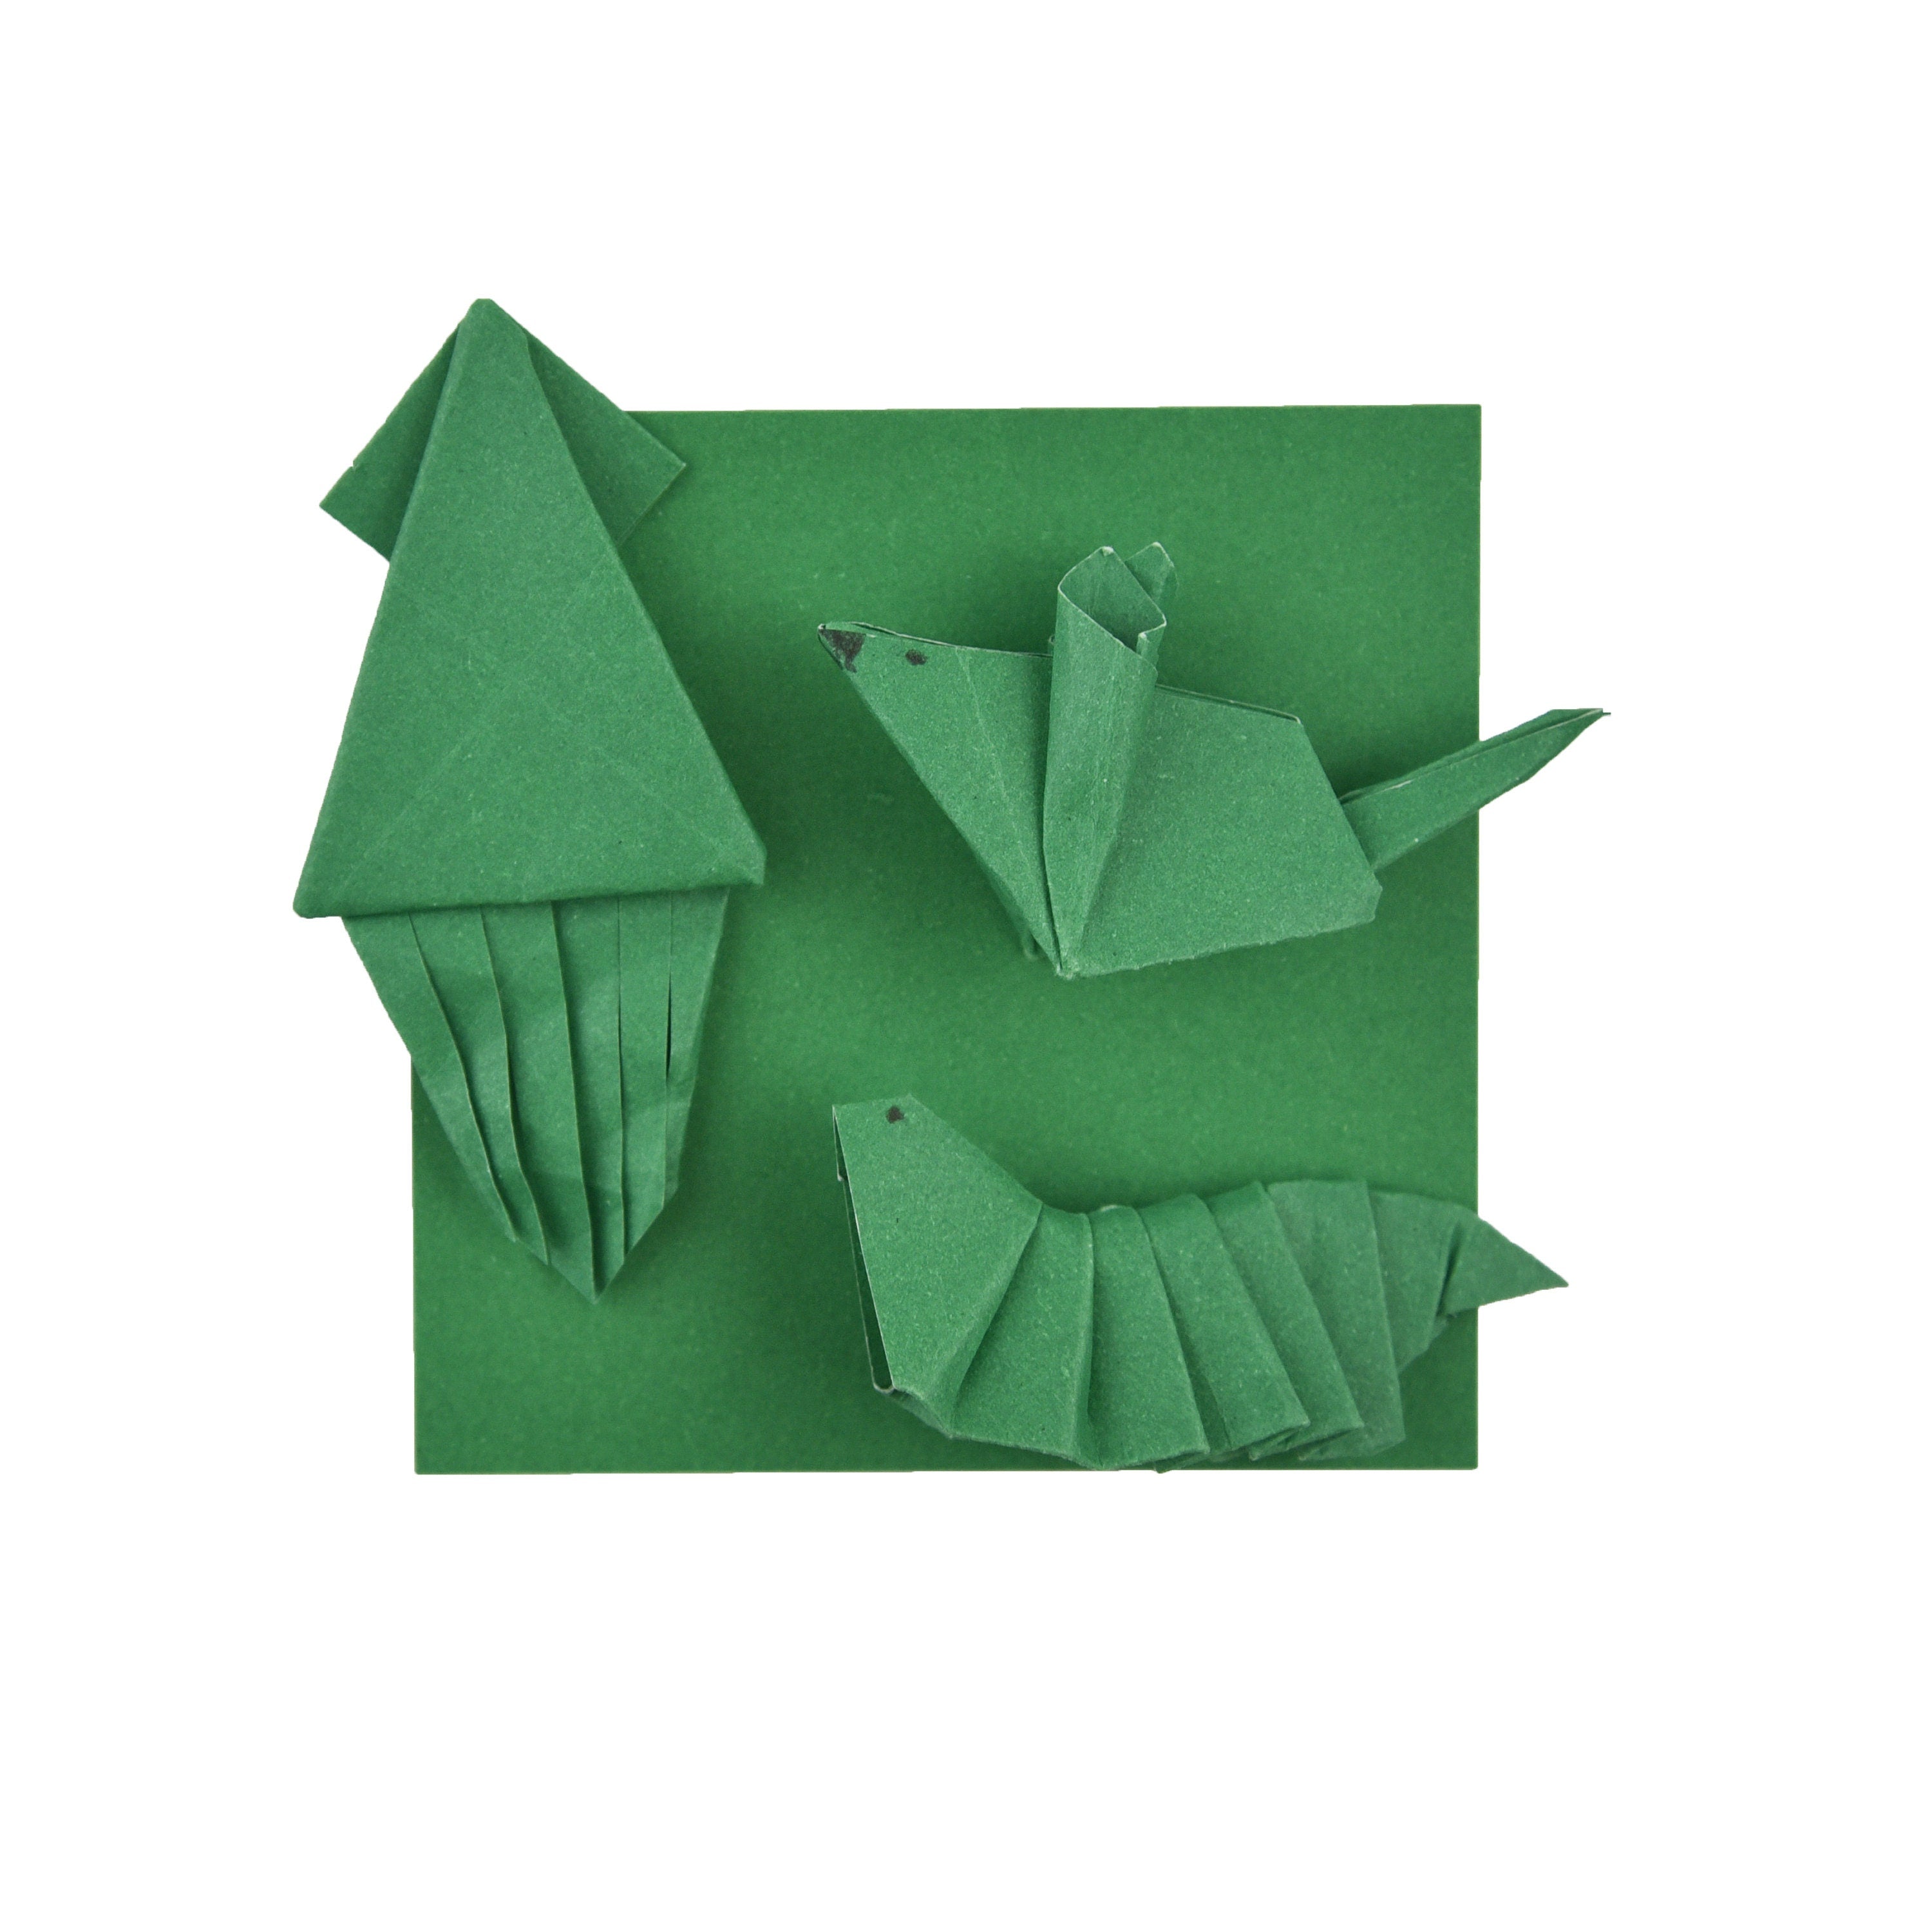 100 fogli di carta verde per origami - 7,6 x 7,6 cm - confezione di carta quadrata per piegare, gru origami e decorazioni - S24